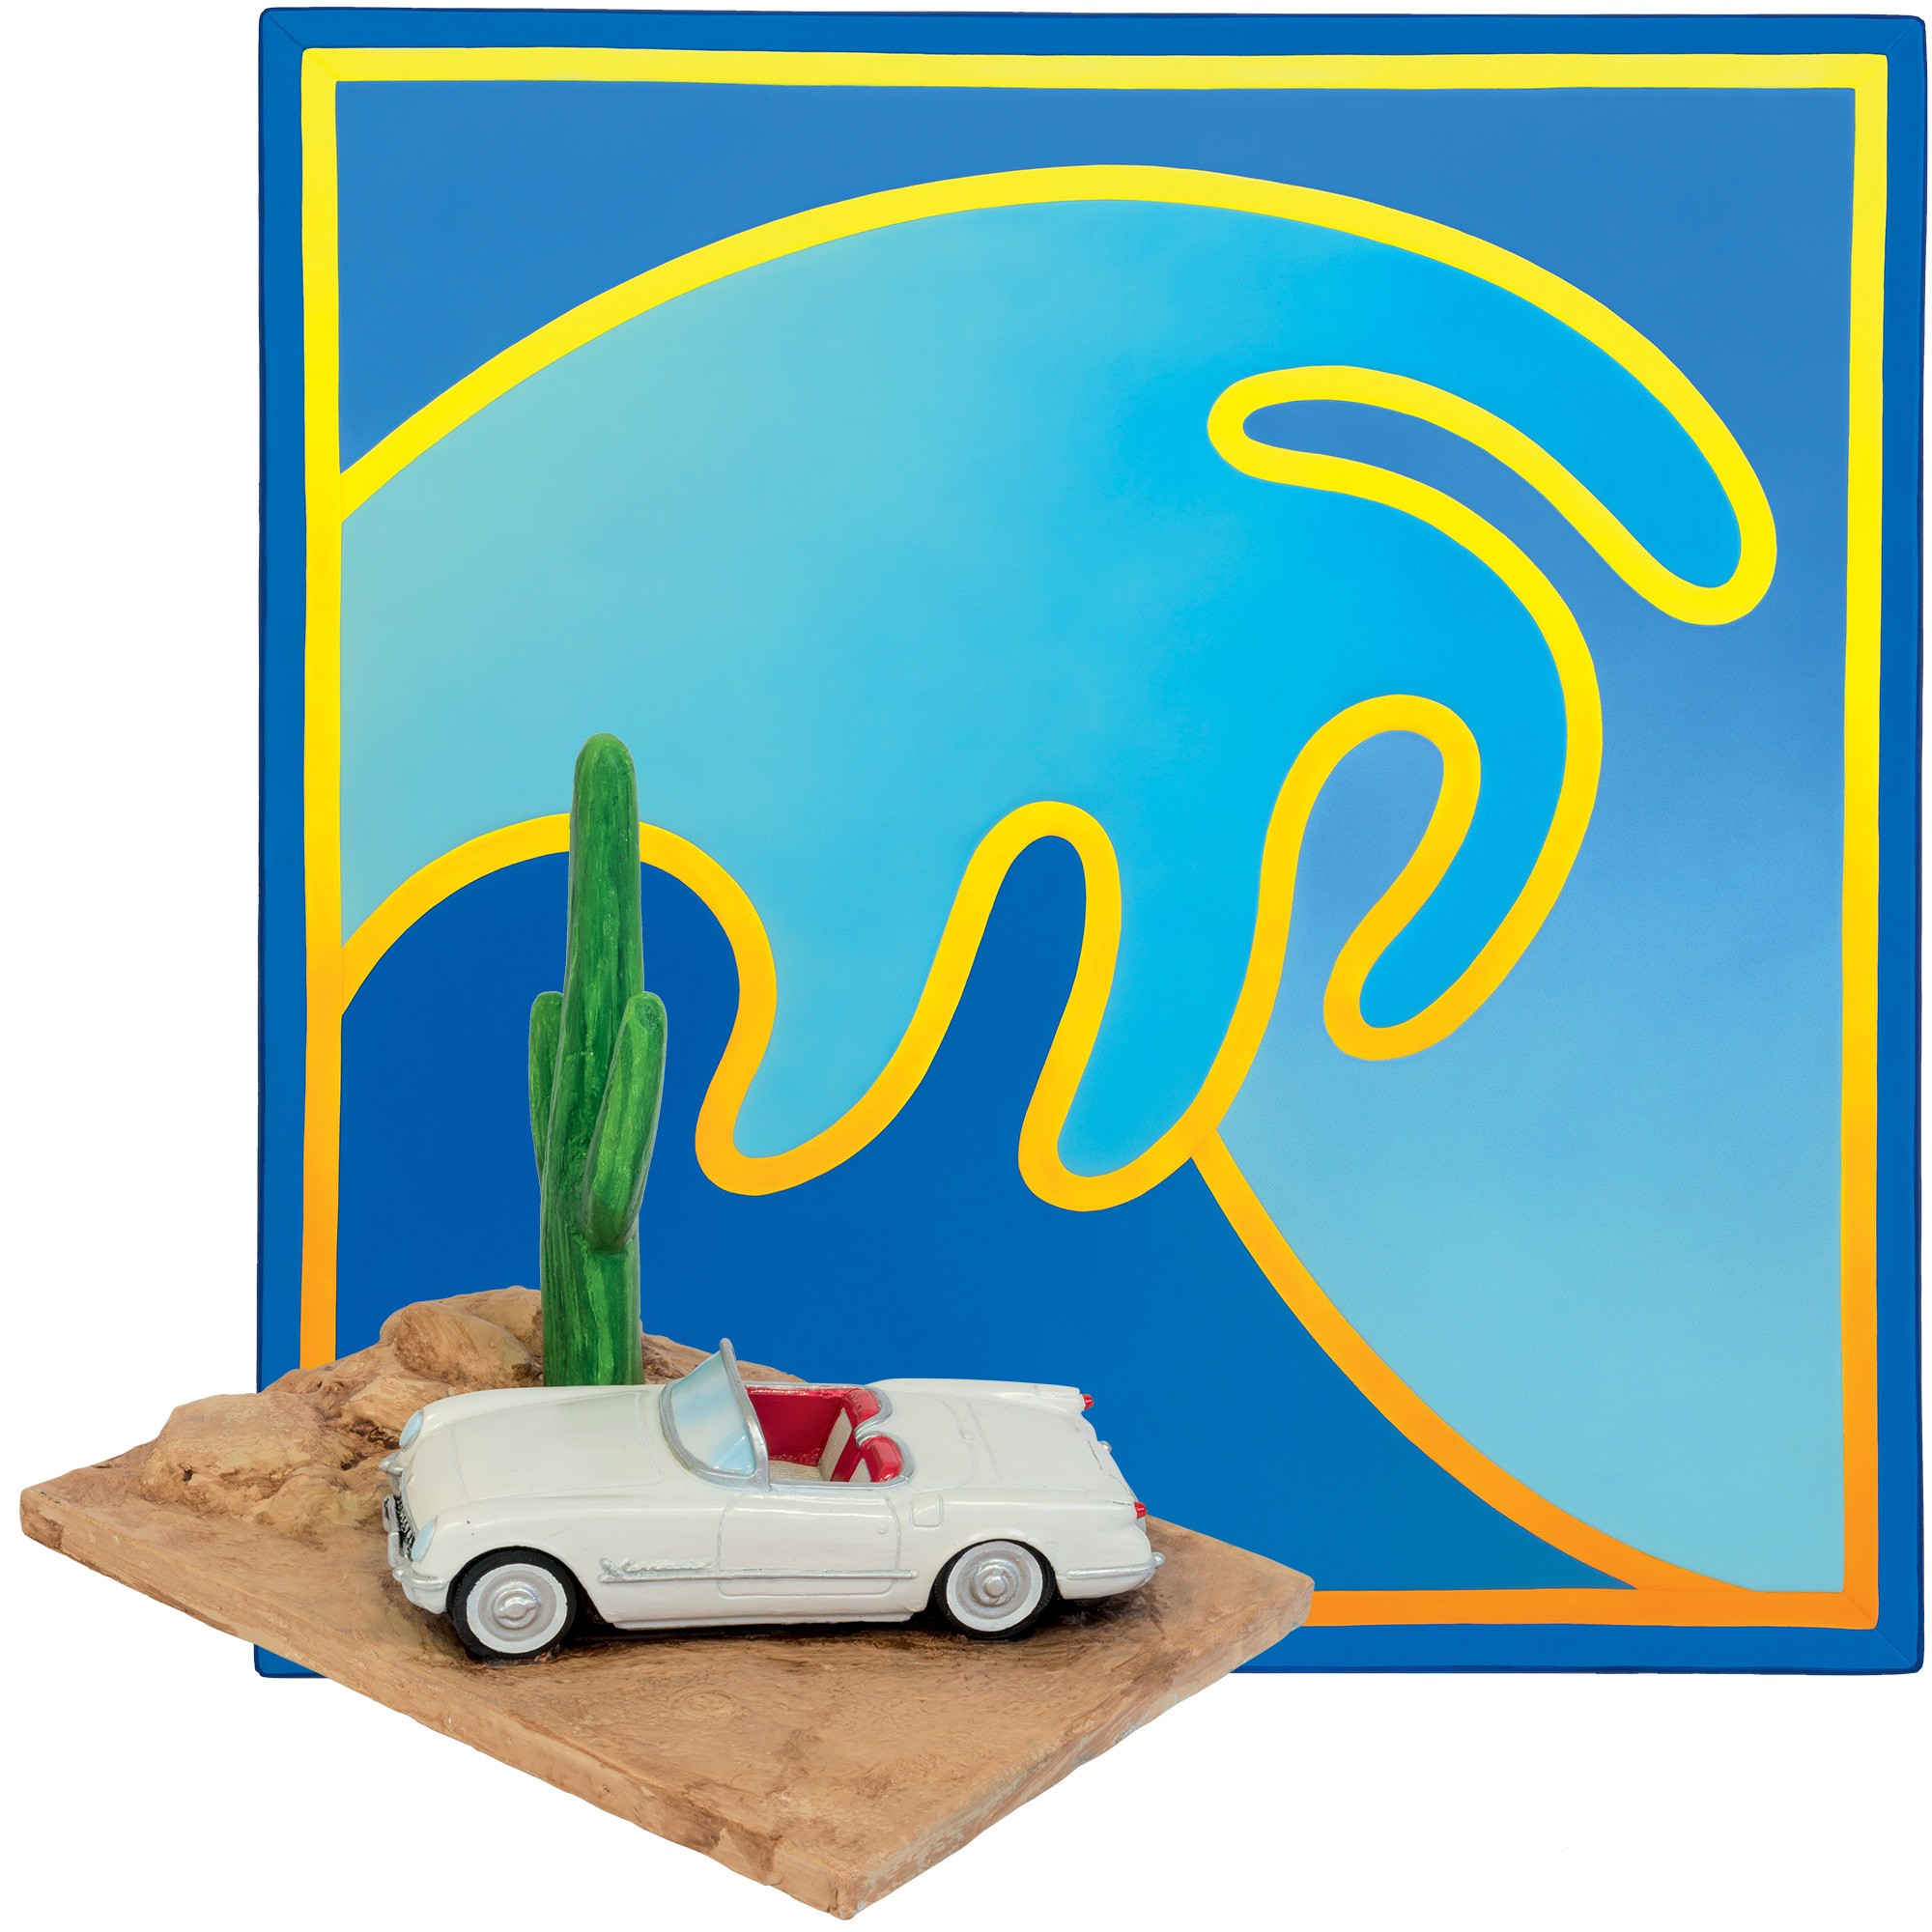 California dream: À esq. a obra The Wave; a escultura Desperado que inspirou a embalagem da fragrância Cactus Garden (Foto: divulgação)